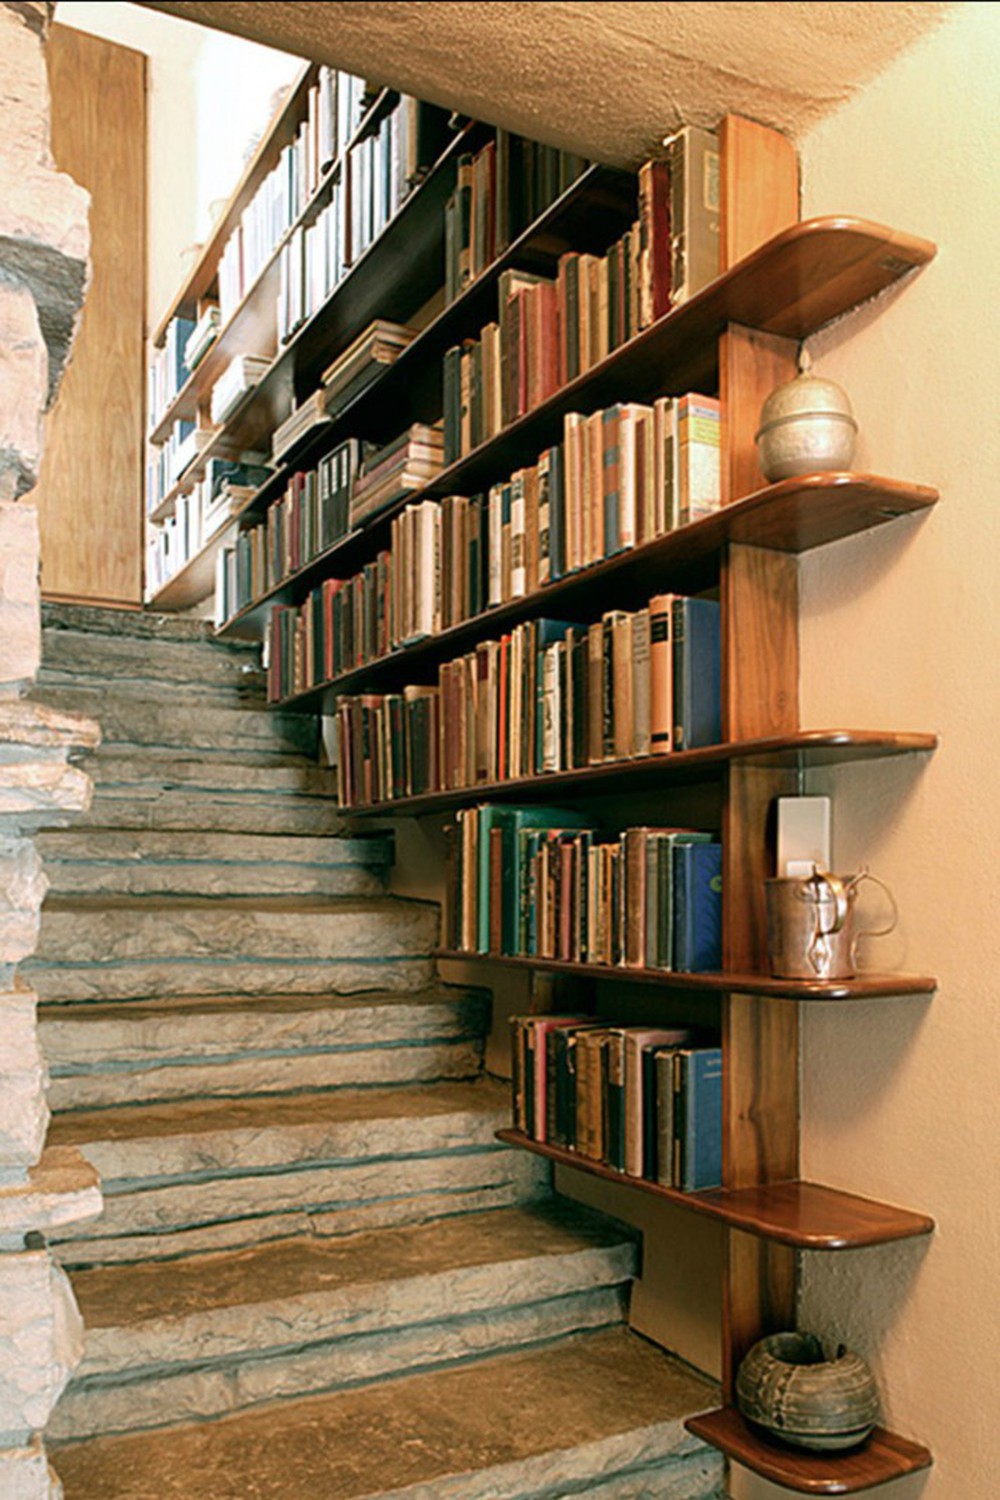 Tận dụng gầm cầu thang thành tủ sách sẽ biến nhà bạn trở thành một thư viện - Ảnh 2.